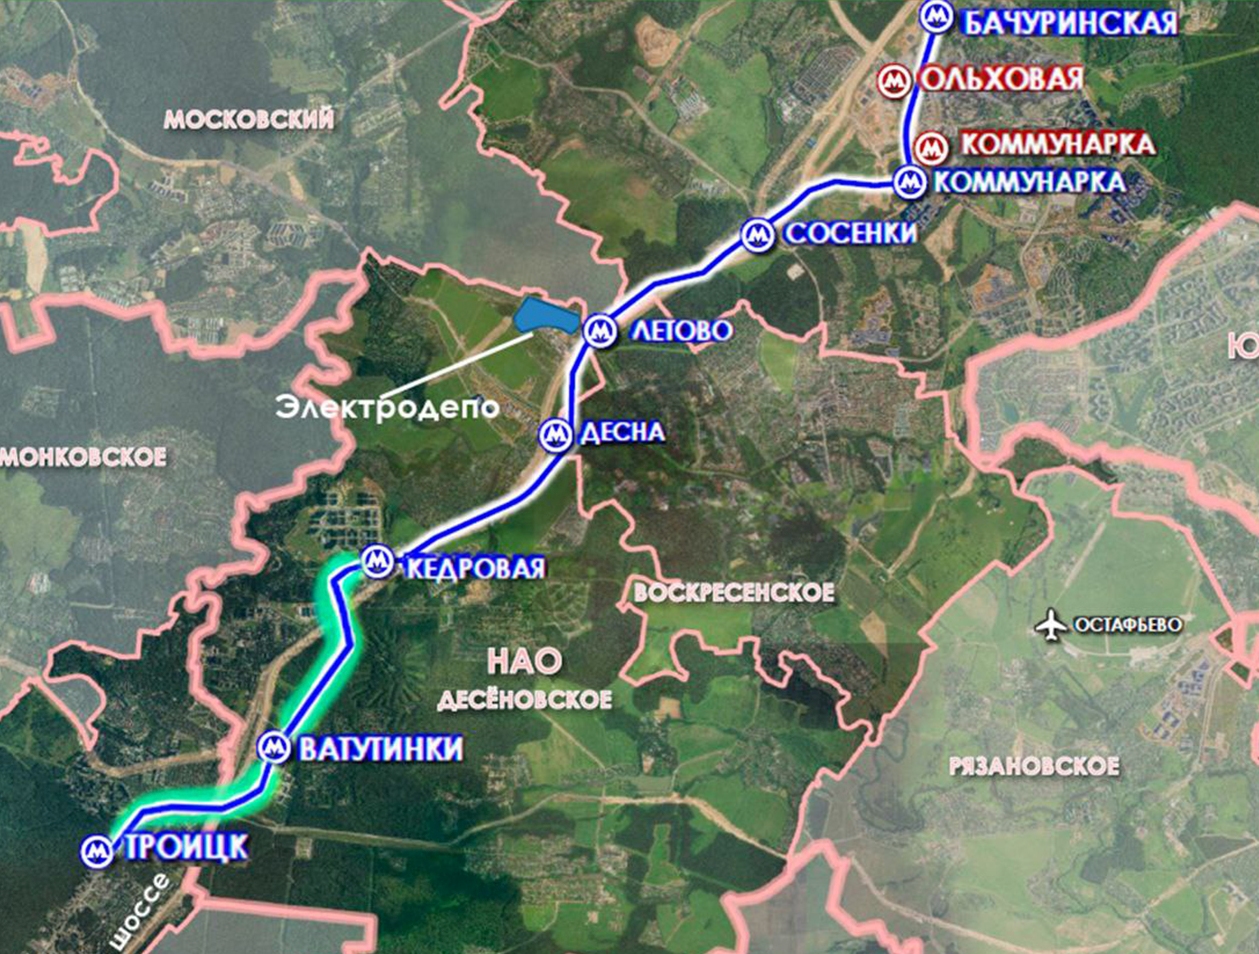 Утвержден проект планировки участка Троицкой линии метро от станции «Кедровая» до станции «Троицк»